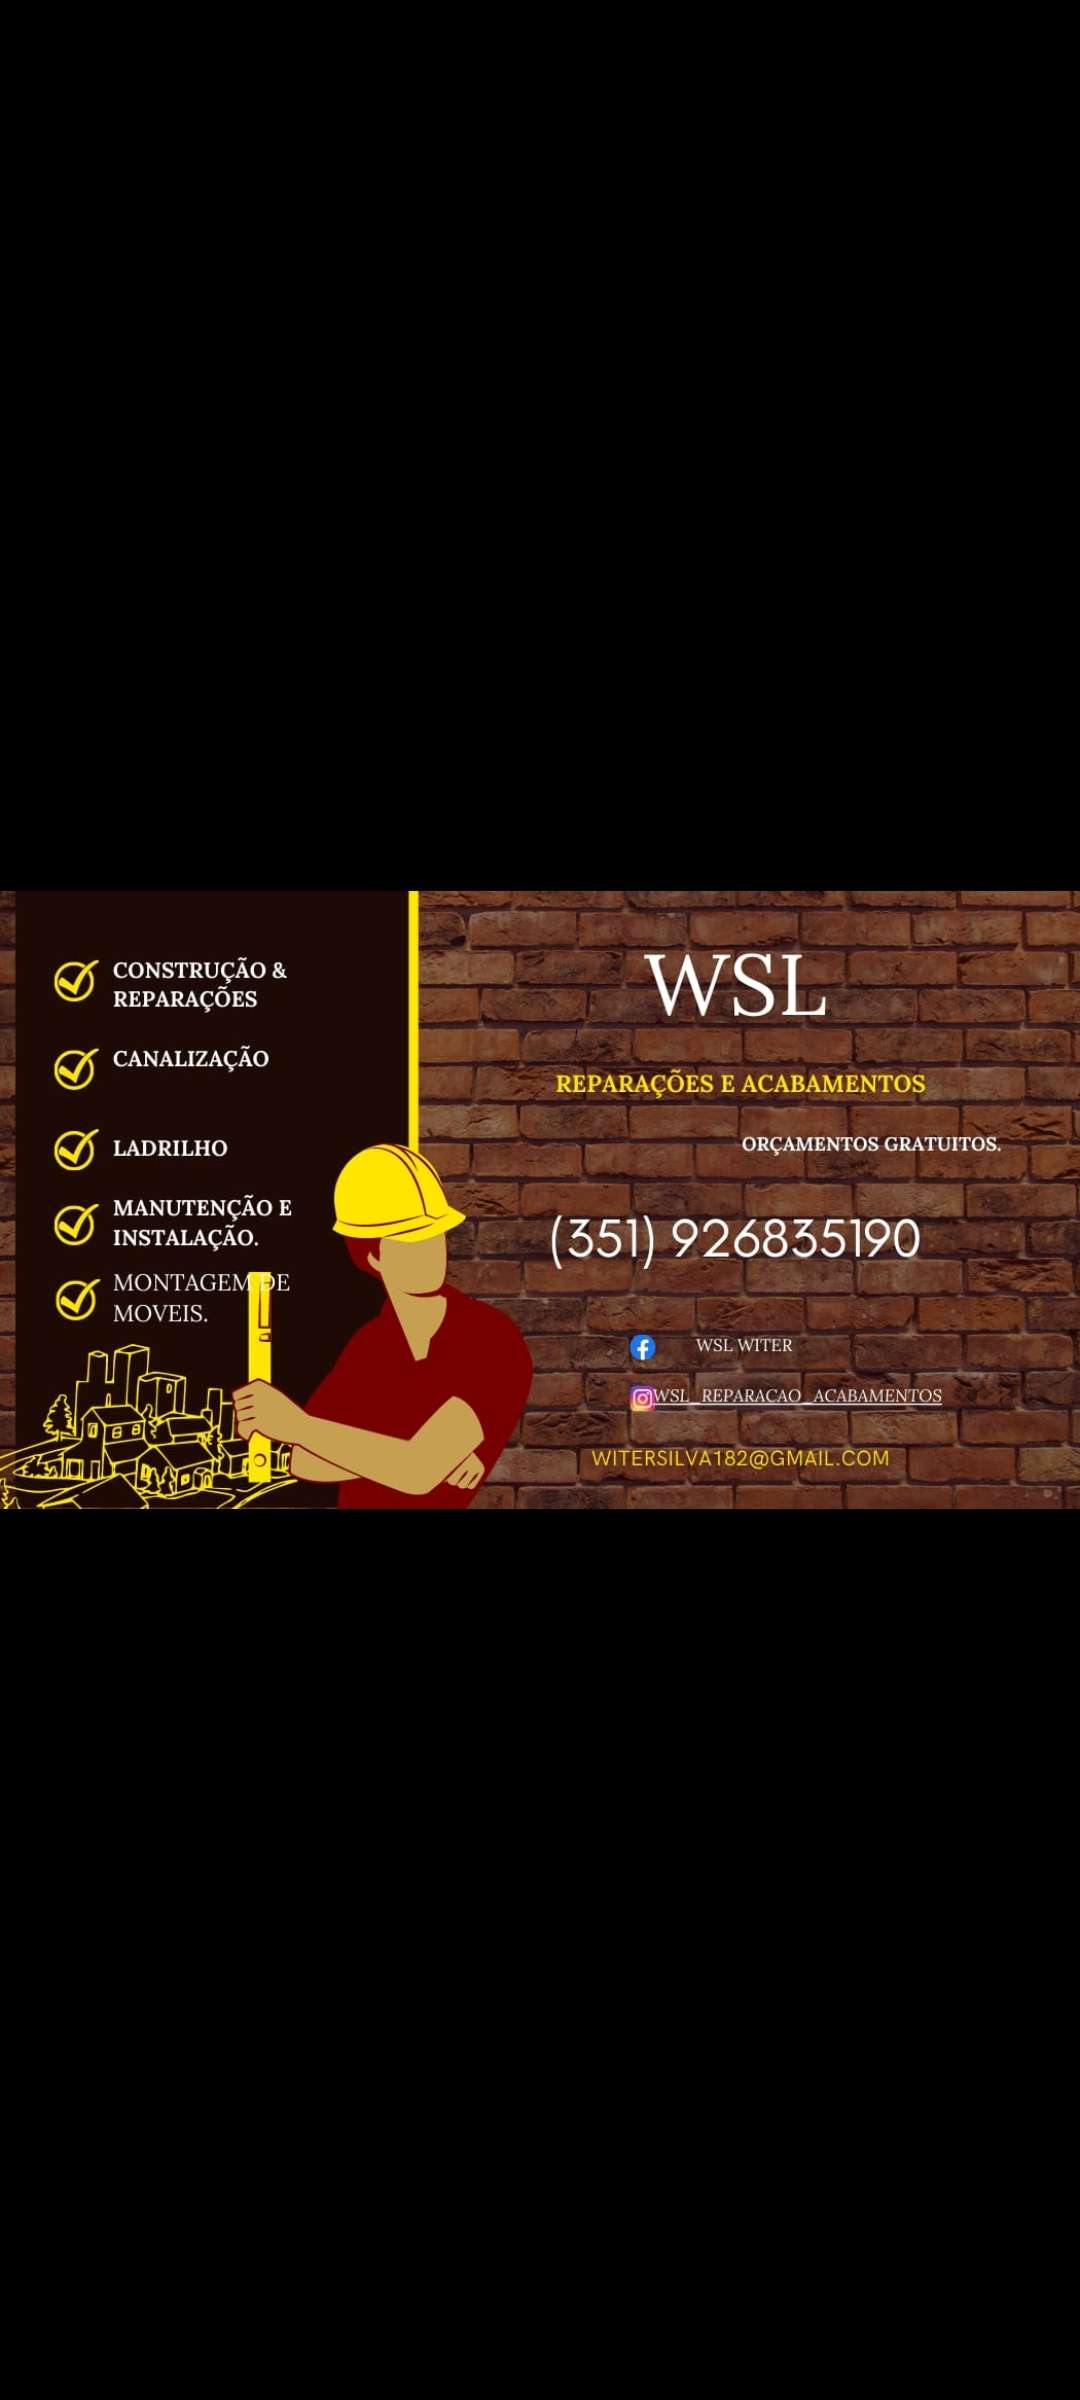 WSL Reparações e Acabamentos - Sintra - Remoção de Amianto